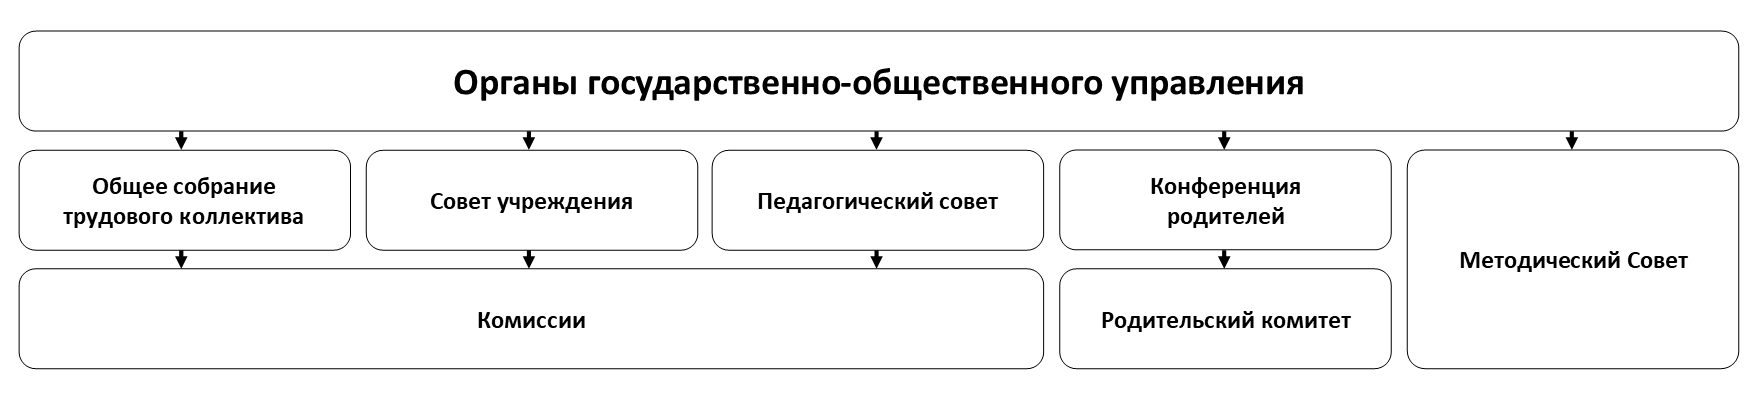 Структура ДДТ ОАО